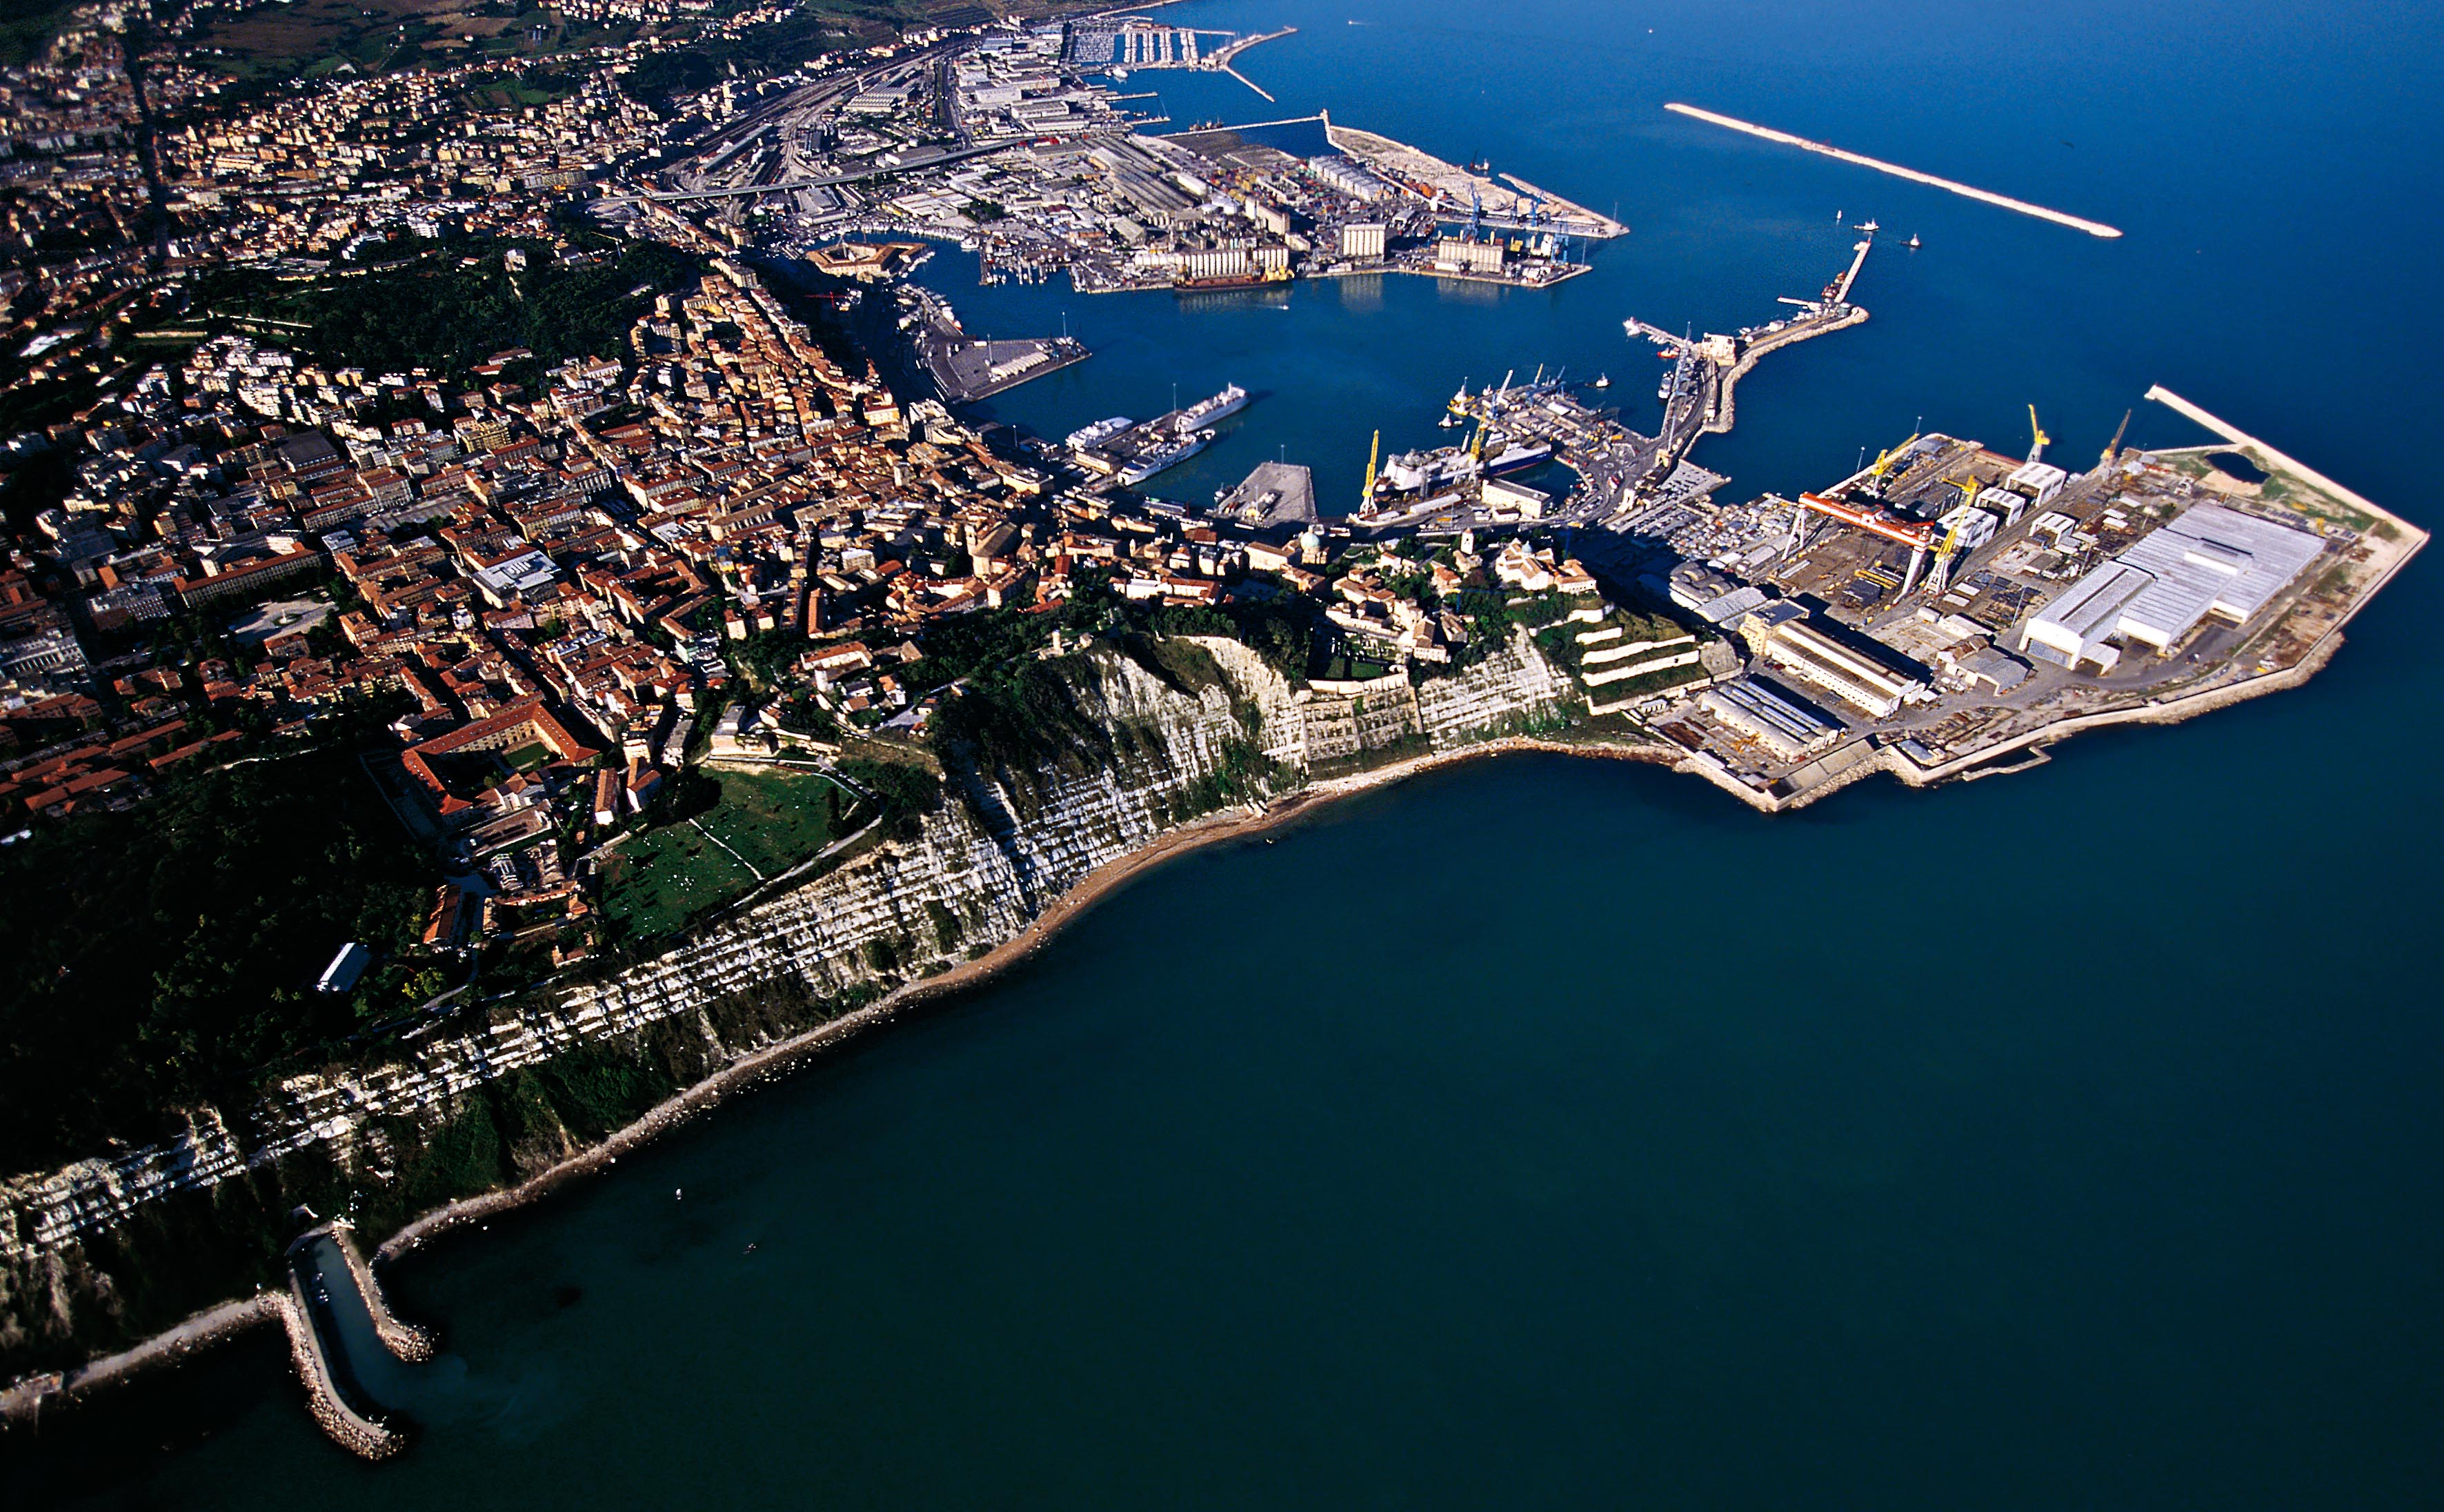 cineturismo, location, cinema, turismo, film tourism, movie tour, porto di Ancona, porto, Ancona, Marche, lazzaretto, Mole Vanvitelliana, Ankon